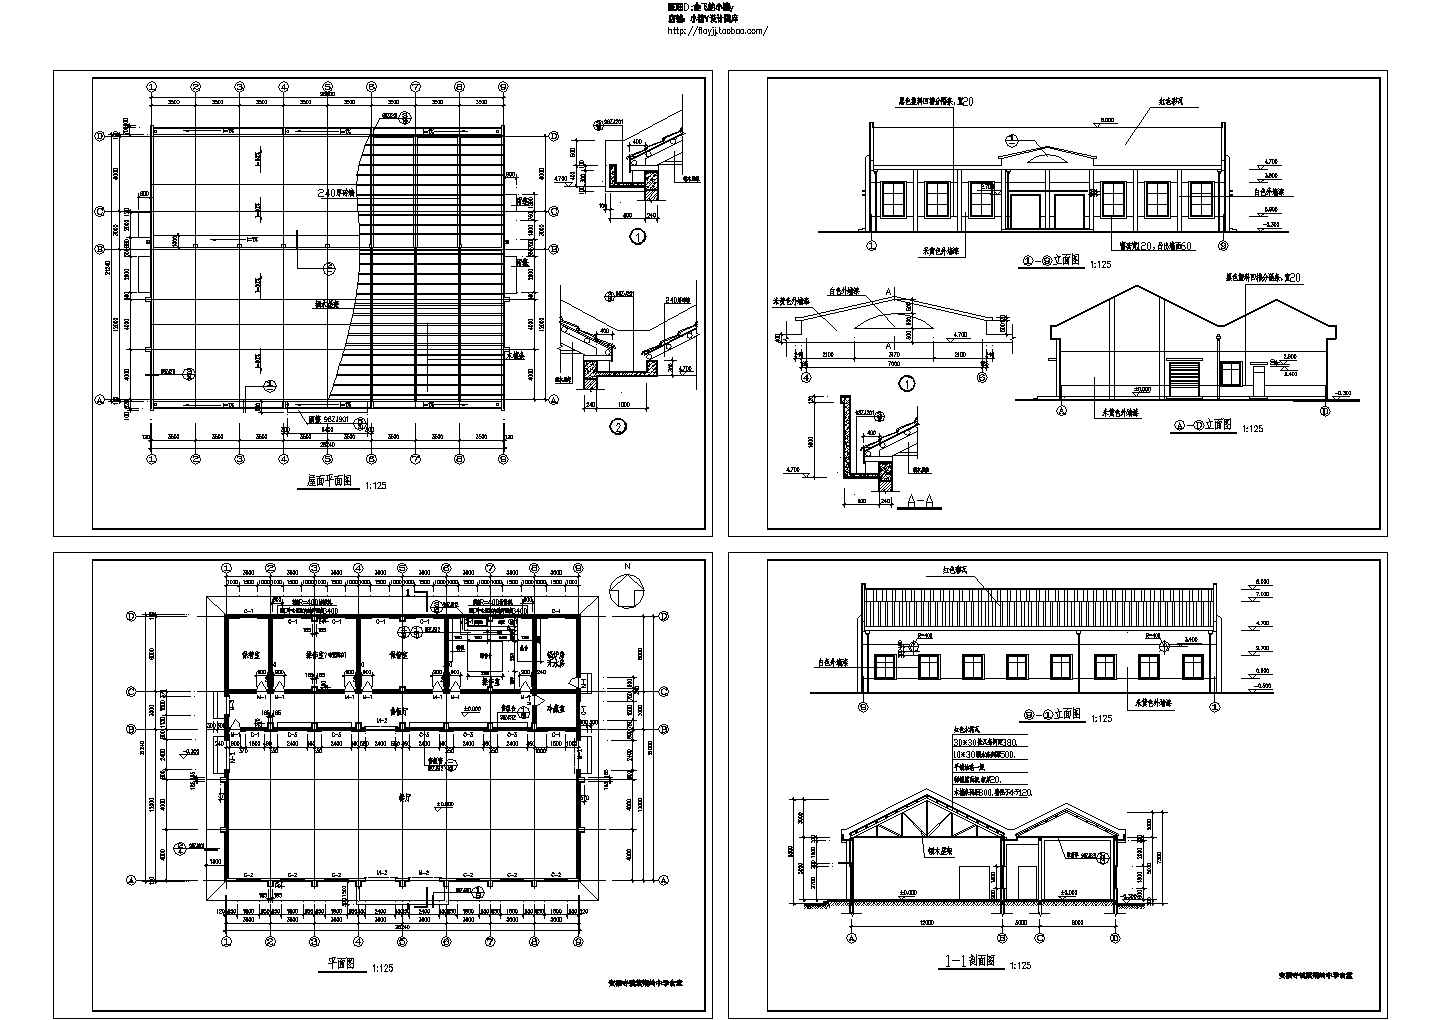 长28.24米 宽21.24米 单层中学食堂建筑施工图Cad设计图